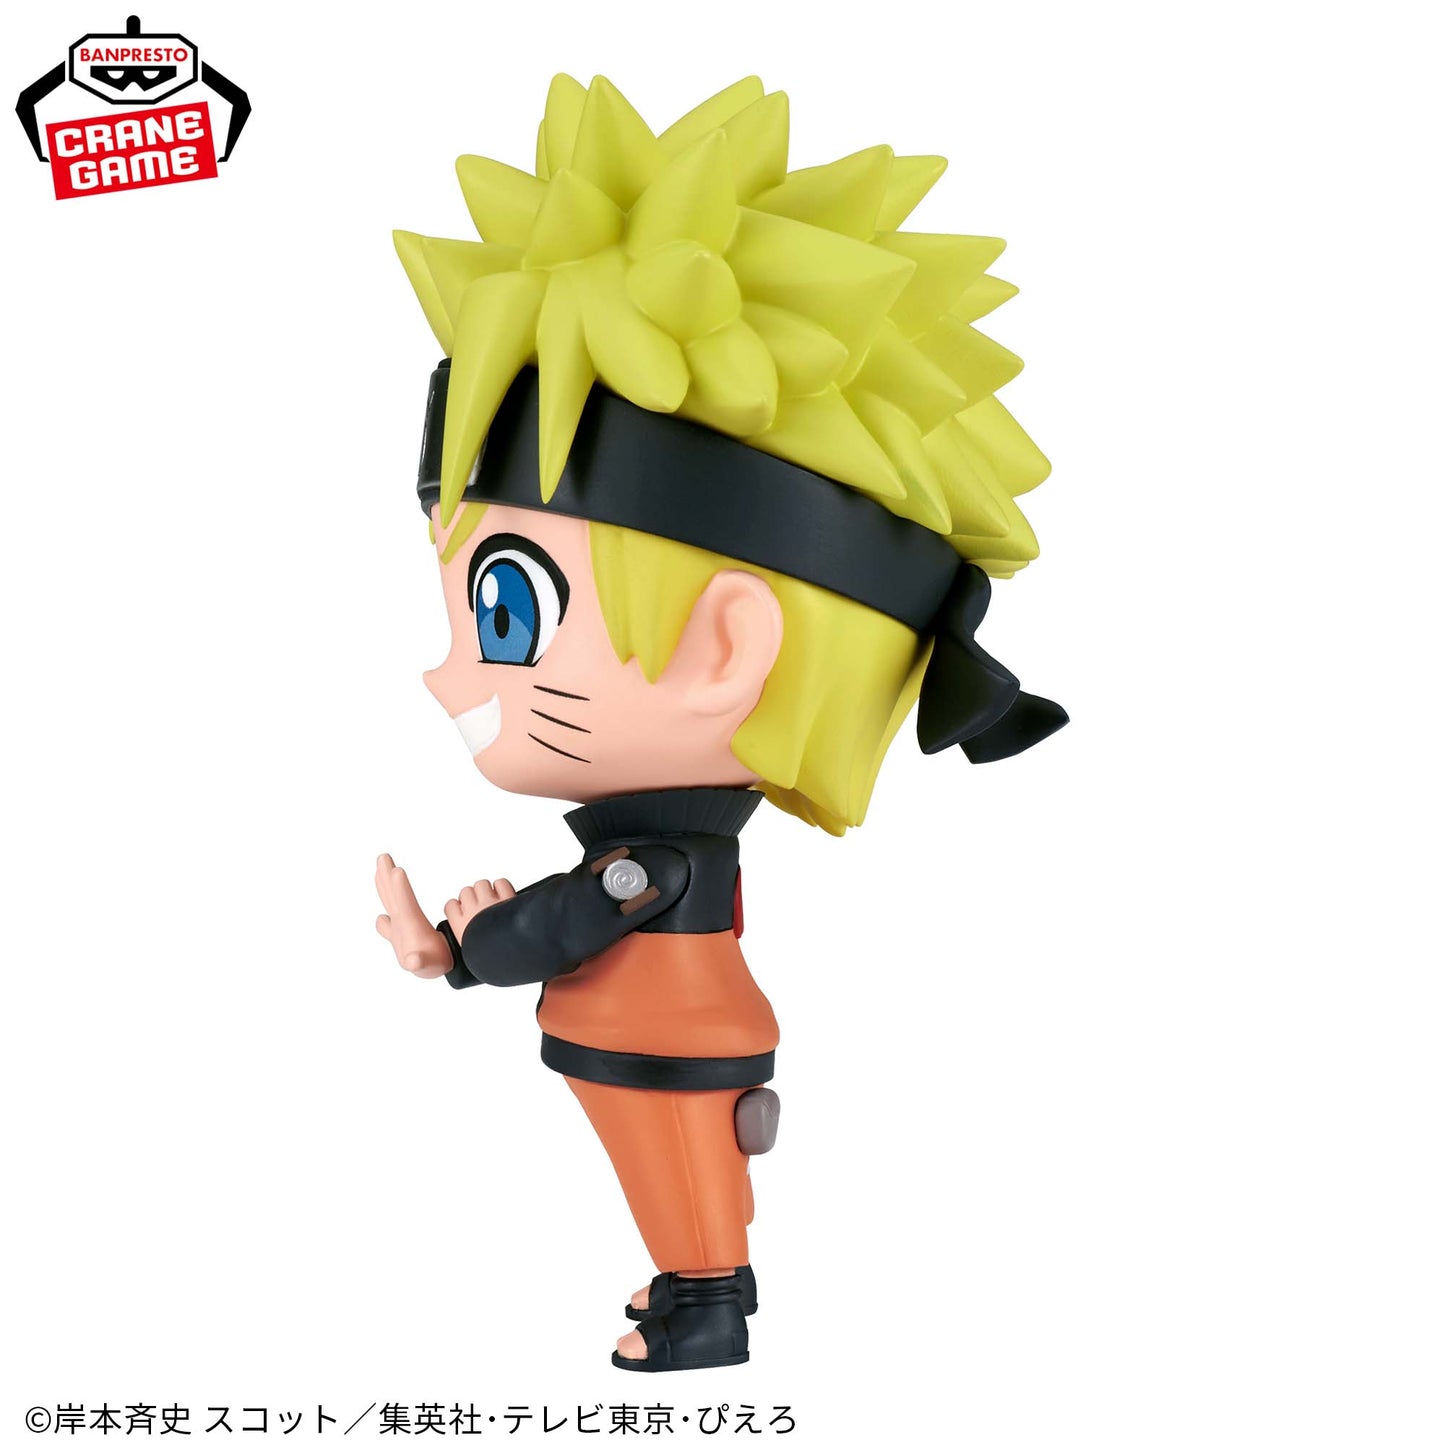 Figurine Naruto Uzumaki Repoprize Naruto Shippuden